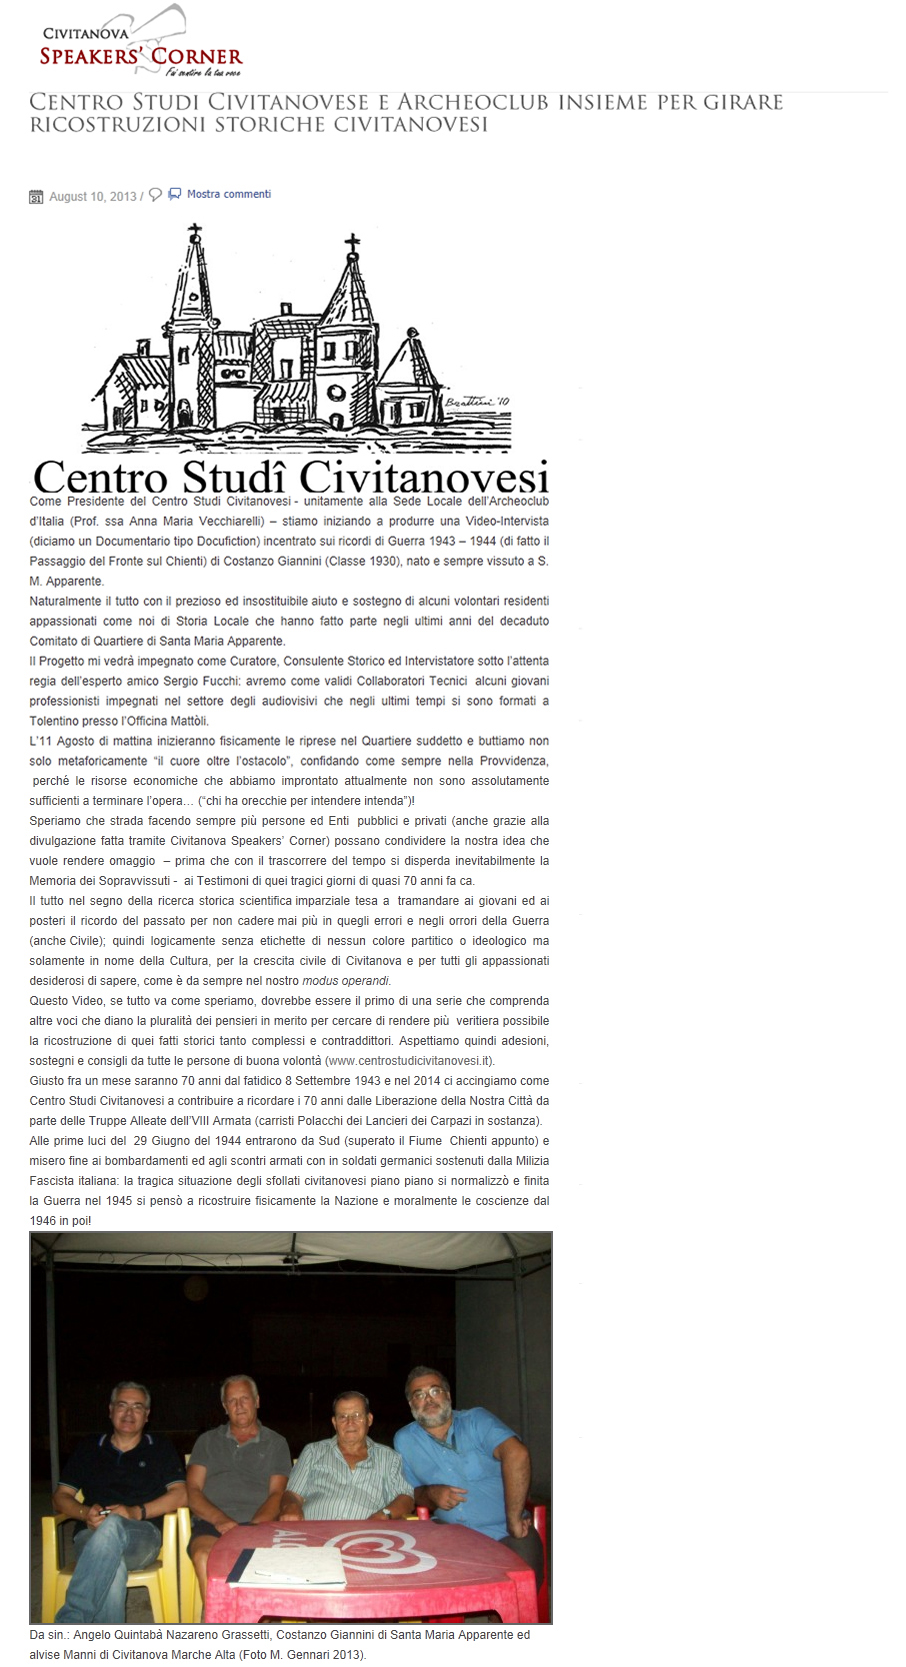 Dal sito Civitanova Speakers' Corner: Centro Studi Civitanovesi e Archeoclub insieme per girare ricostruzioni storiche civitanovesi.